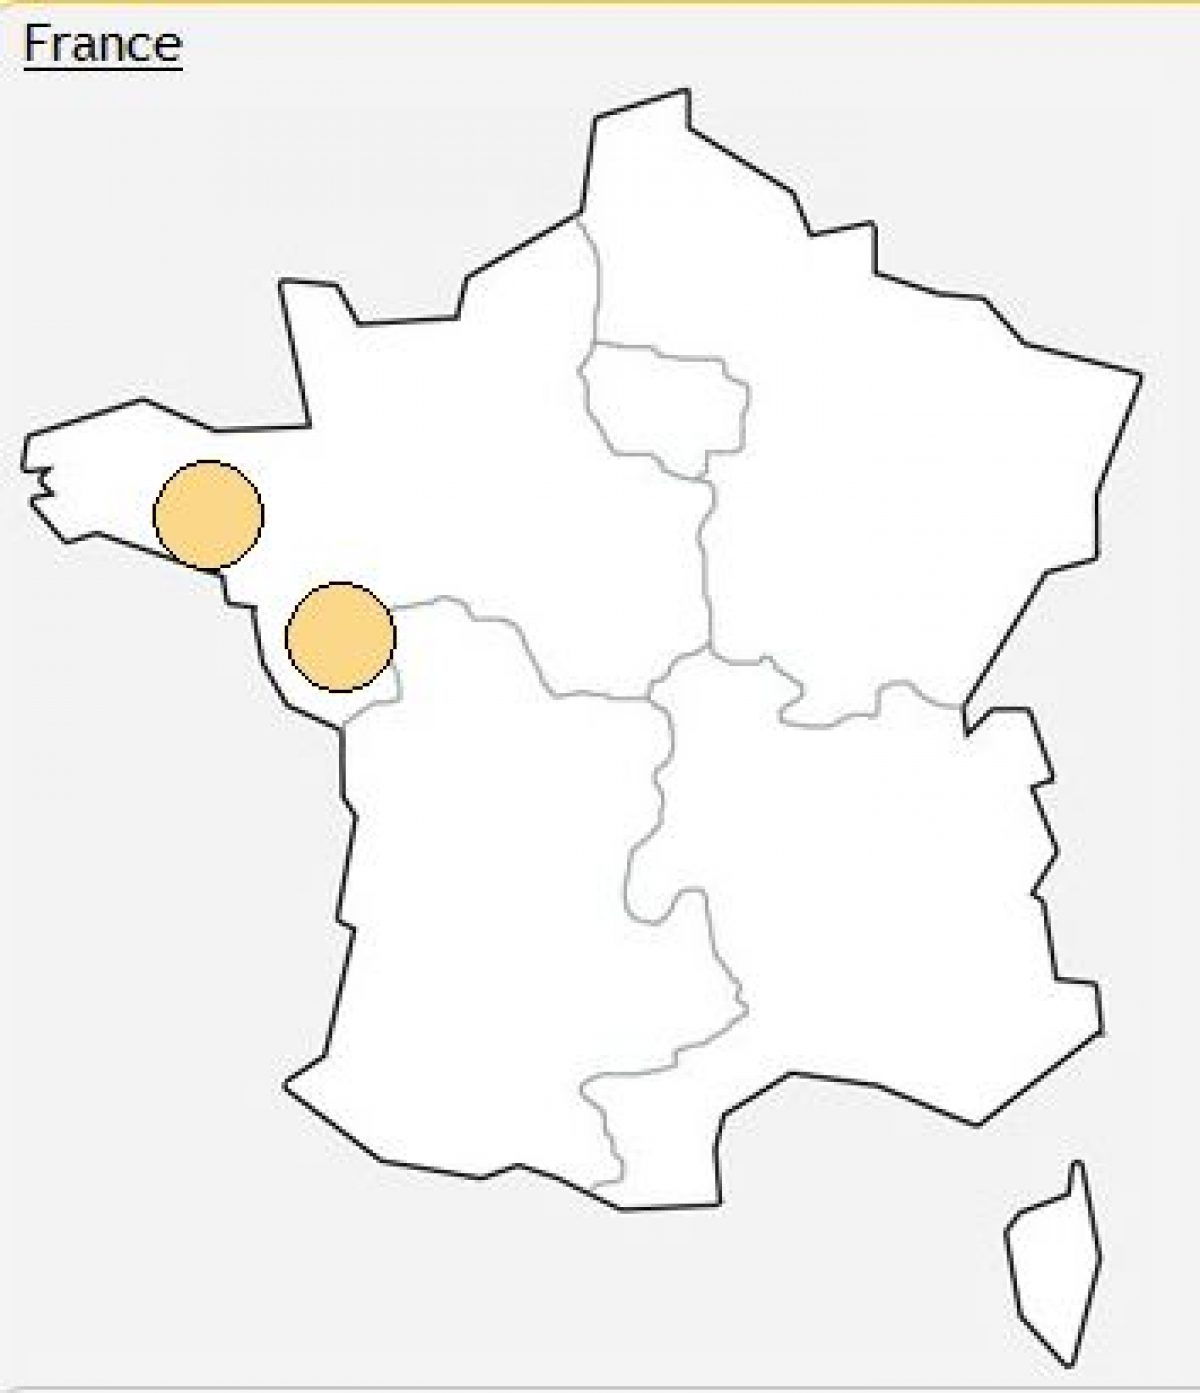 Free: Panne sur certains DSLAM en Pays de Loire